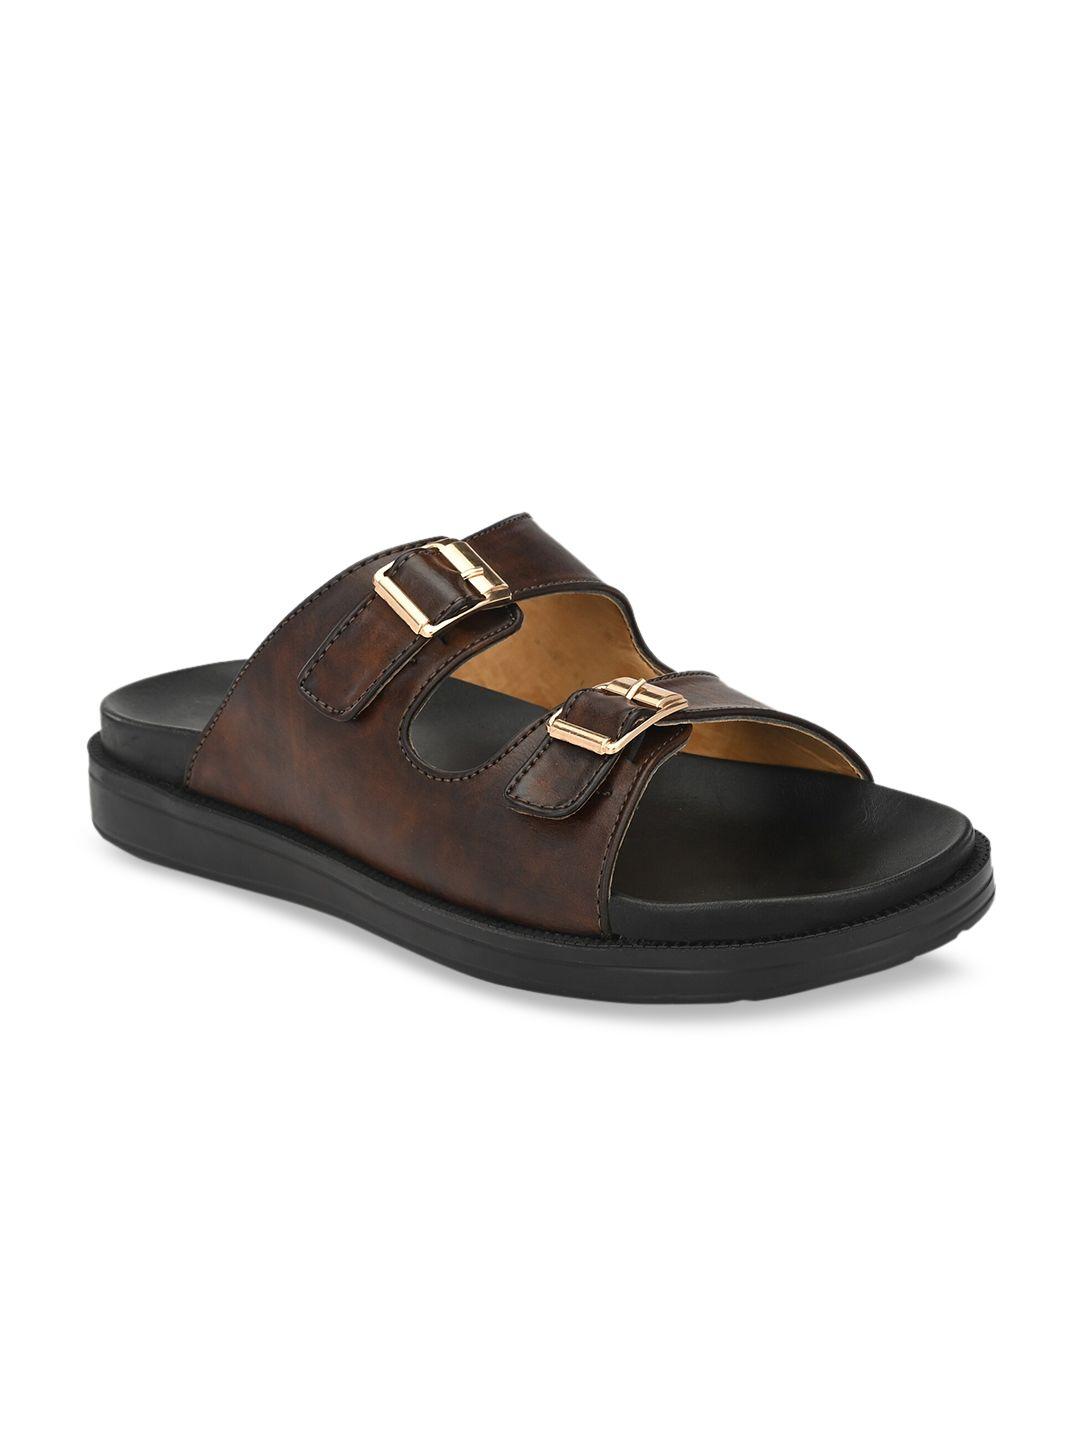 eego italy men brown comfort sandals